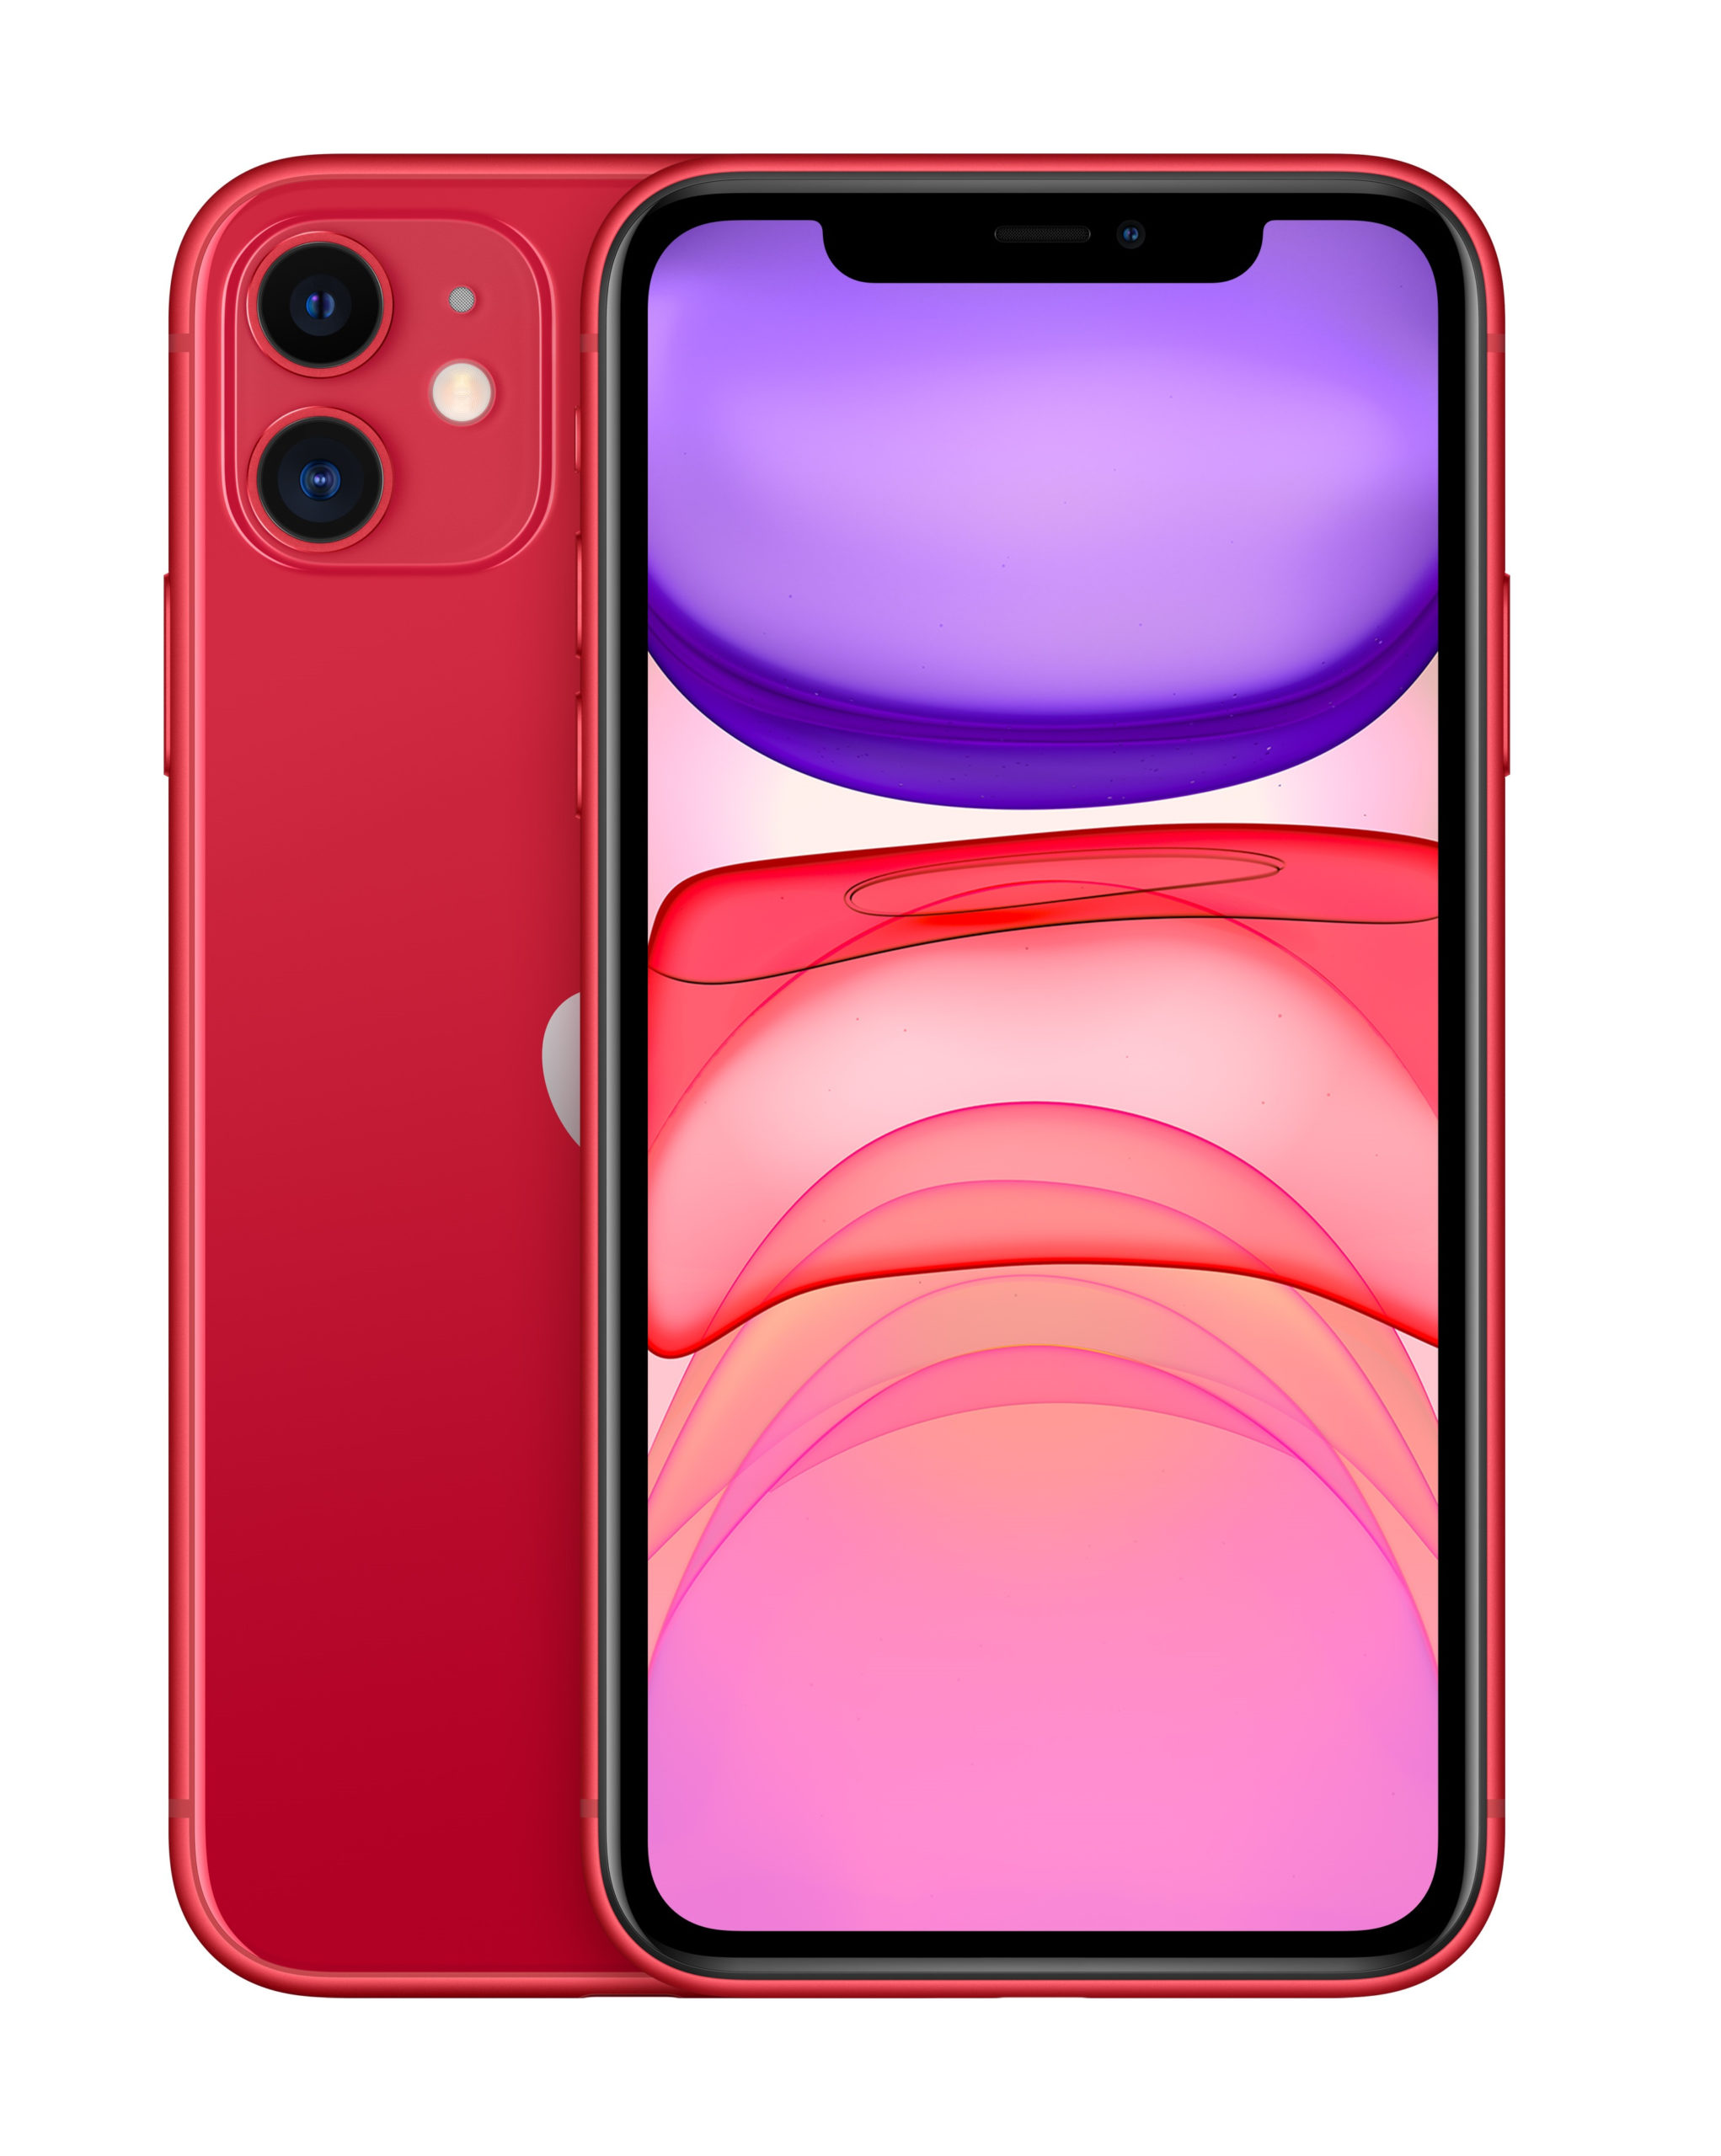 MHDK3LL/A - $782 - Apple iPhone 11 128GB Red (Sim-Free)